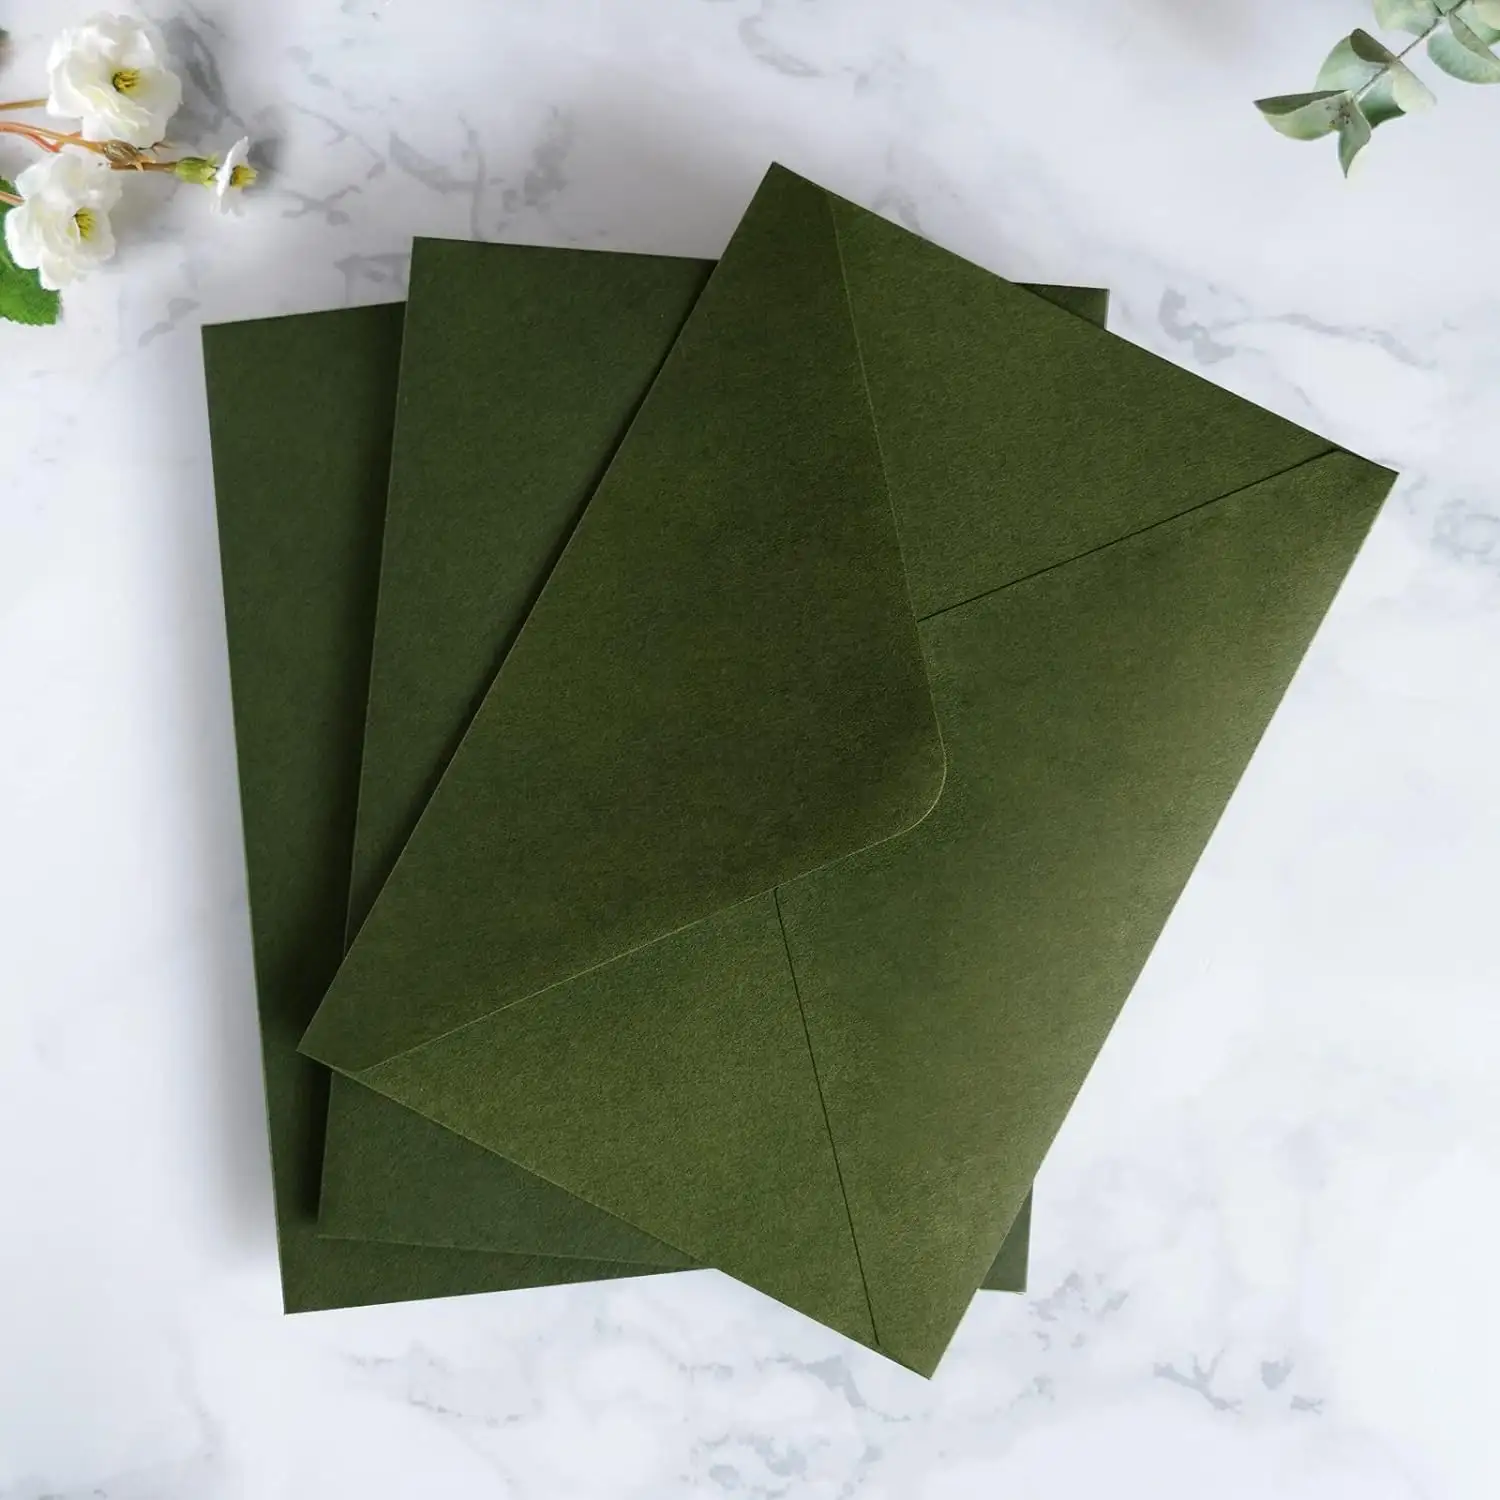 Envelopes for Invitations Weddings Olive Green Envelopes For Baby Shower Birthday